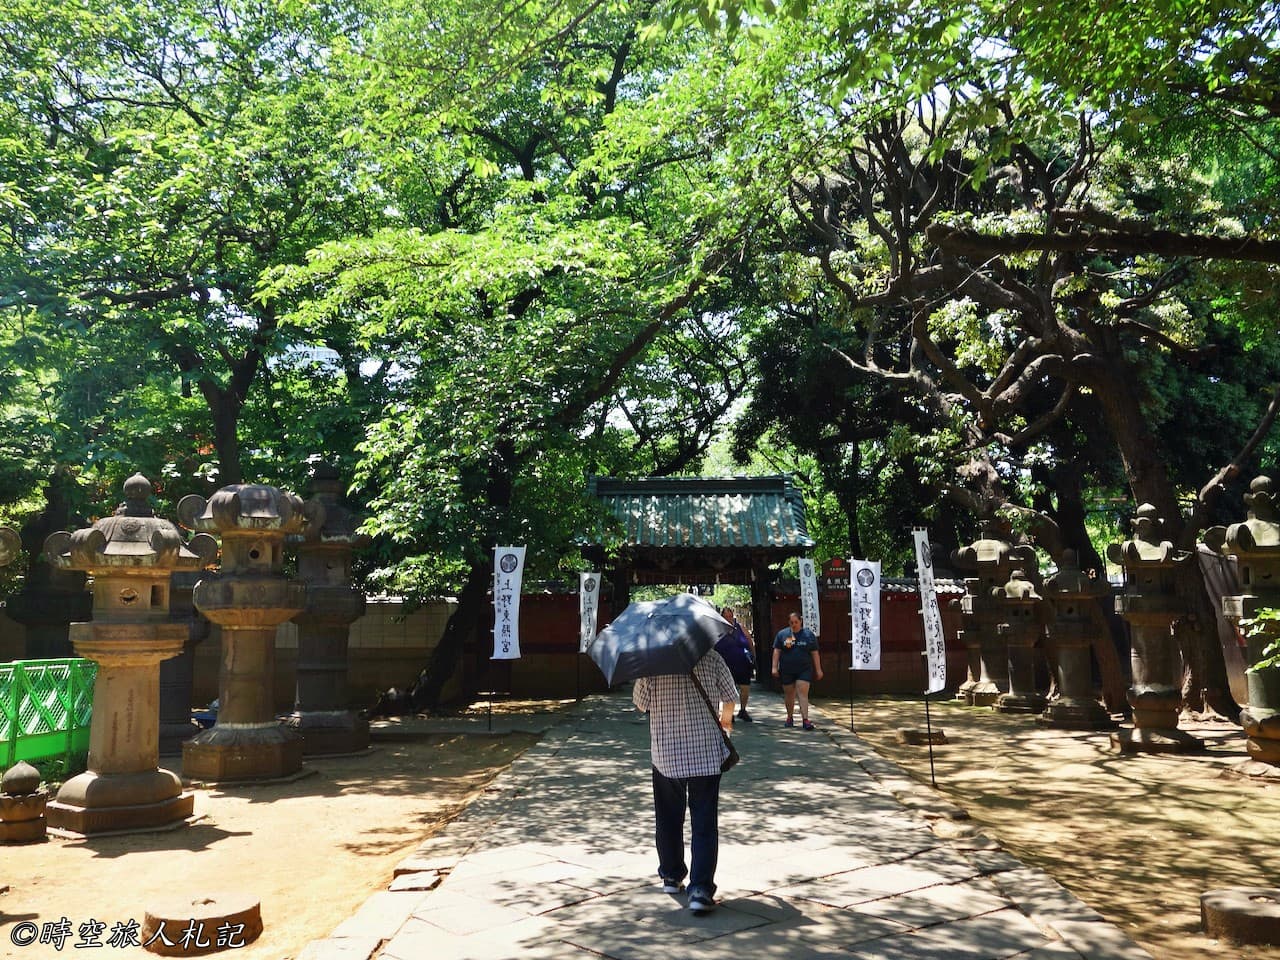 上野公園,上野東照宮,花園稻荷神社,五重塔,不忍池 2